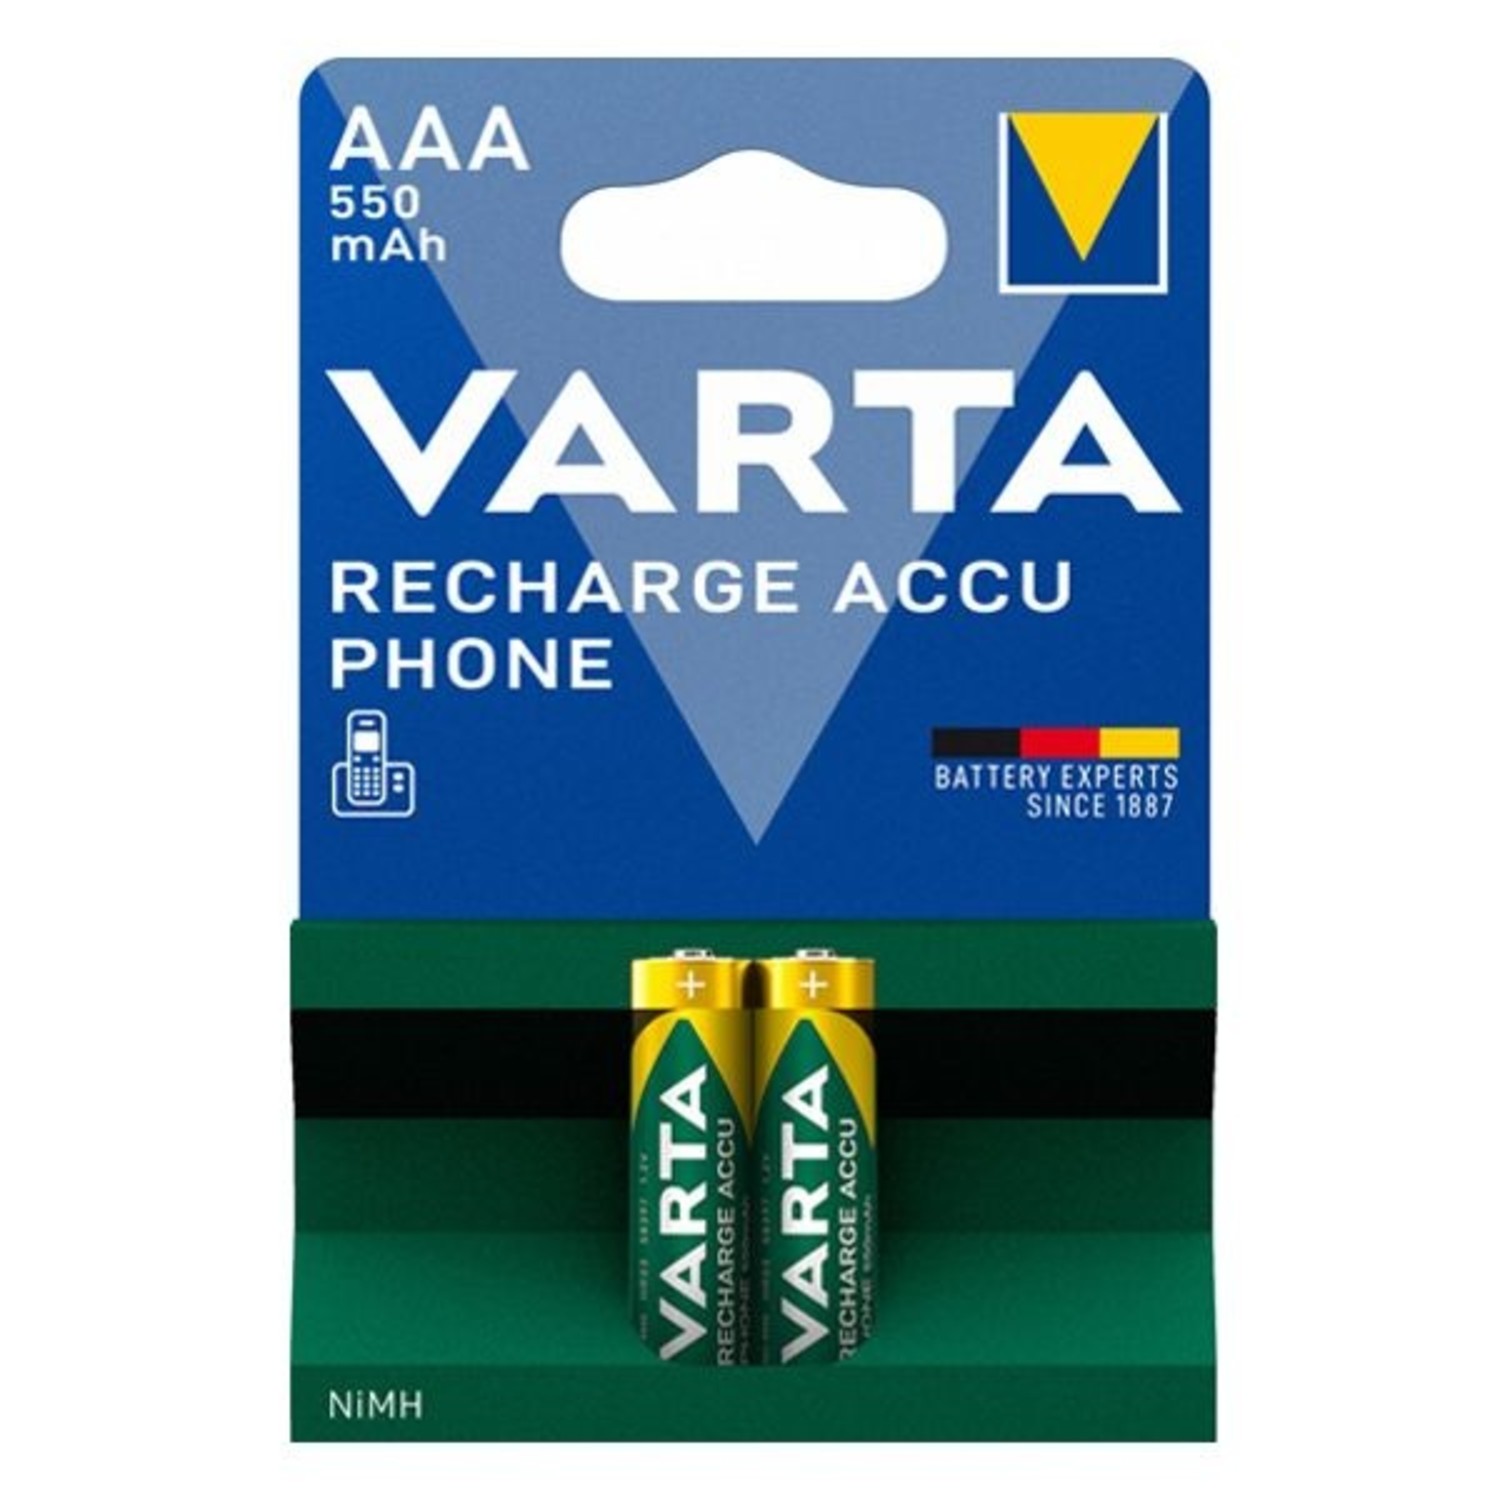 Gemakkelijk Alvast Tot ziens Varta AAA oplaadbare batterijen 550 mAh voor DECT telefoon -  Batterijenstunter.nl